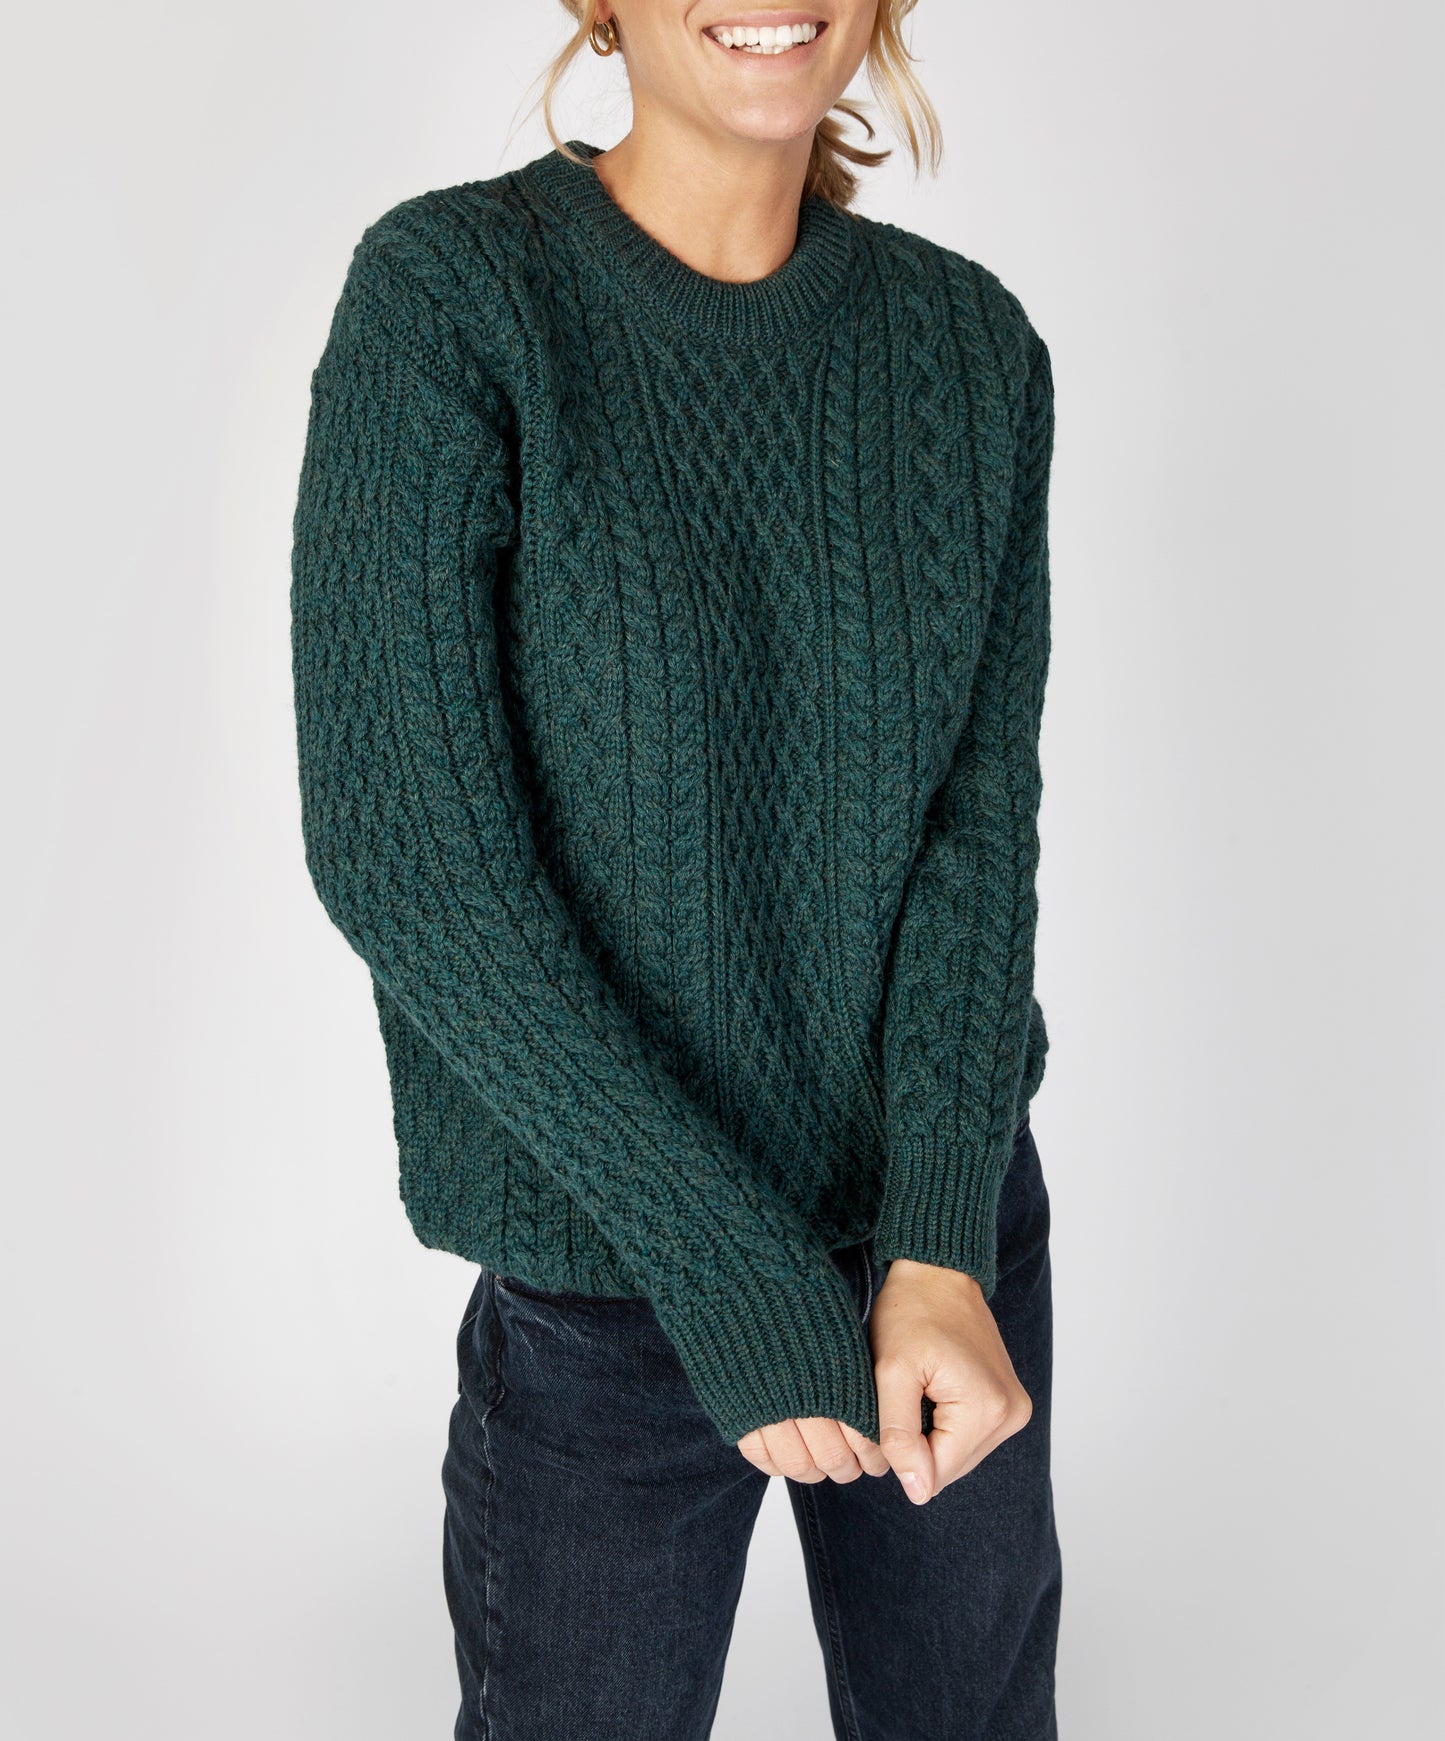 IrelandsEye Knitwear Cuileann Womens Aran Crew Neck Sweater Evergreen